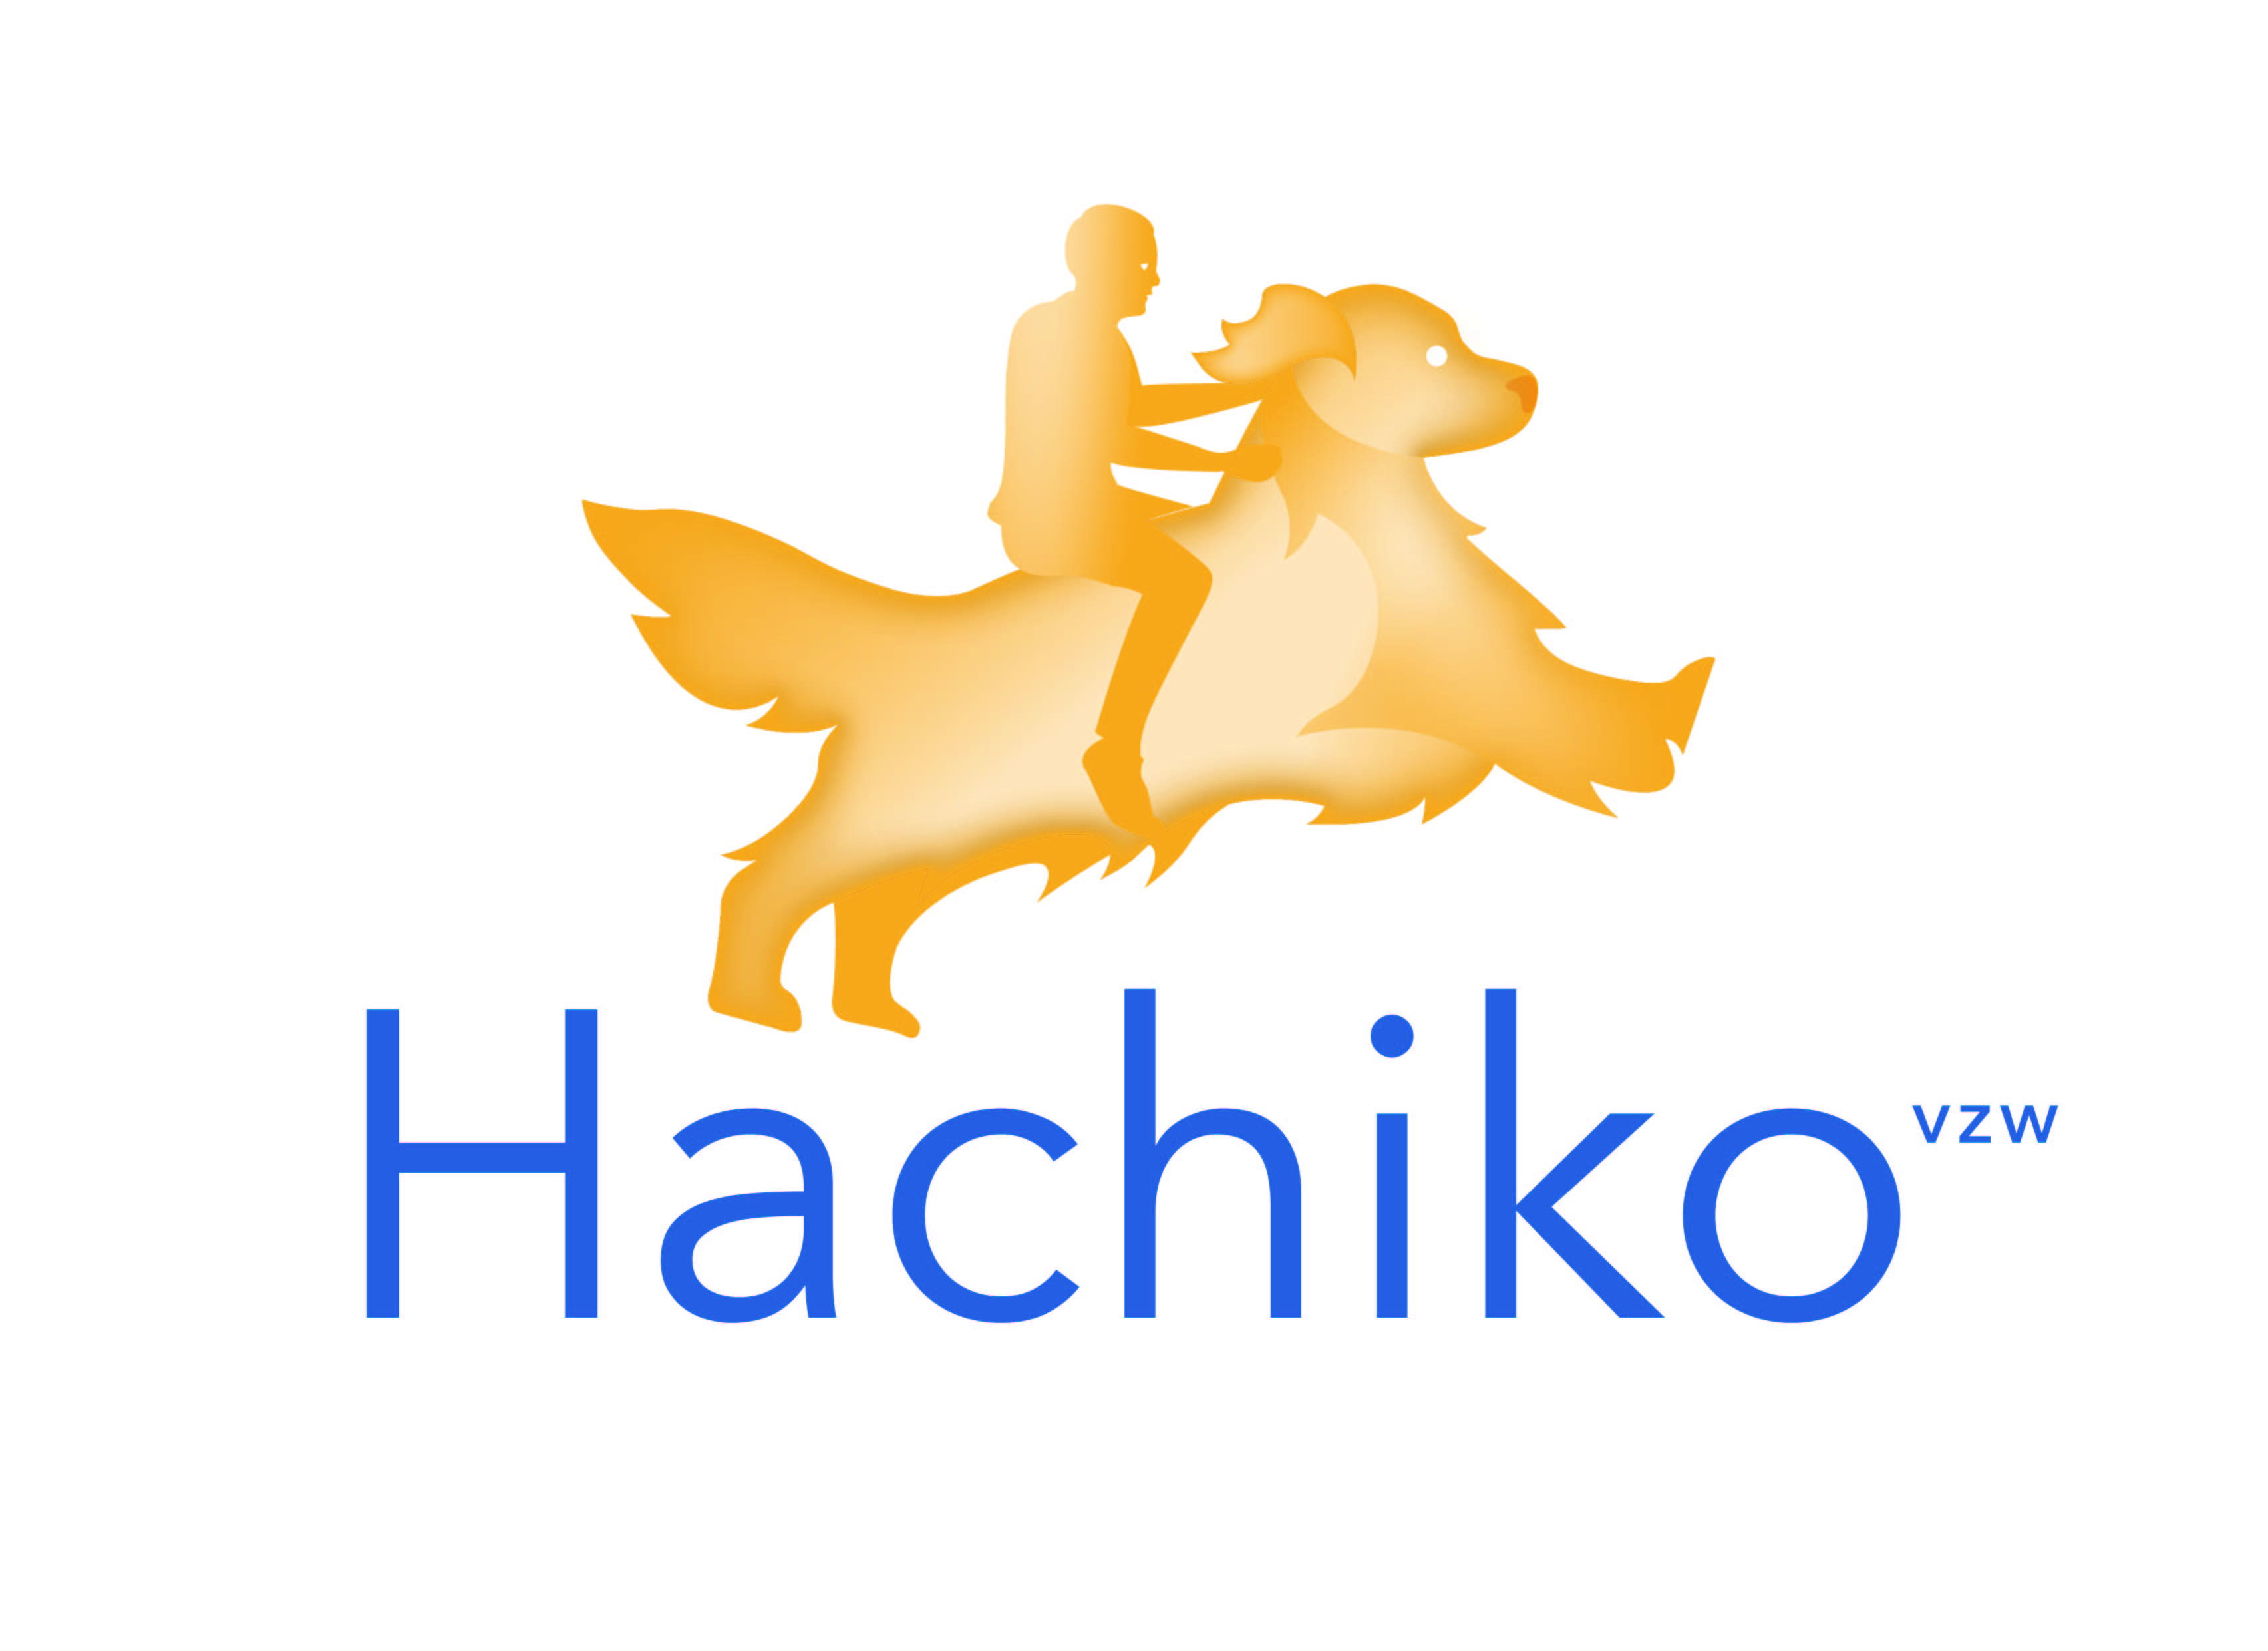 Hachiko vzw